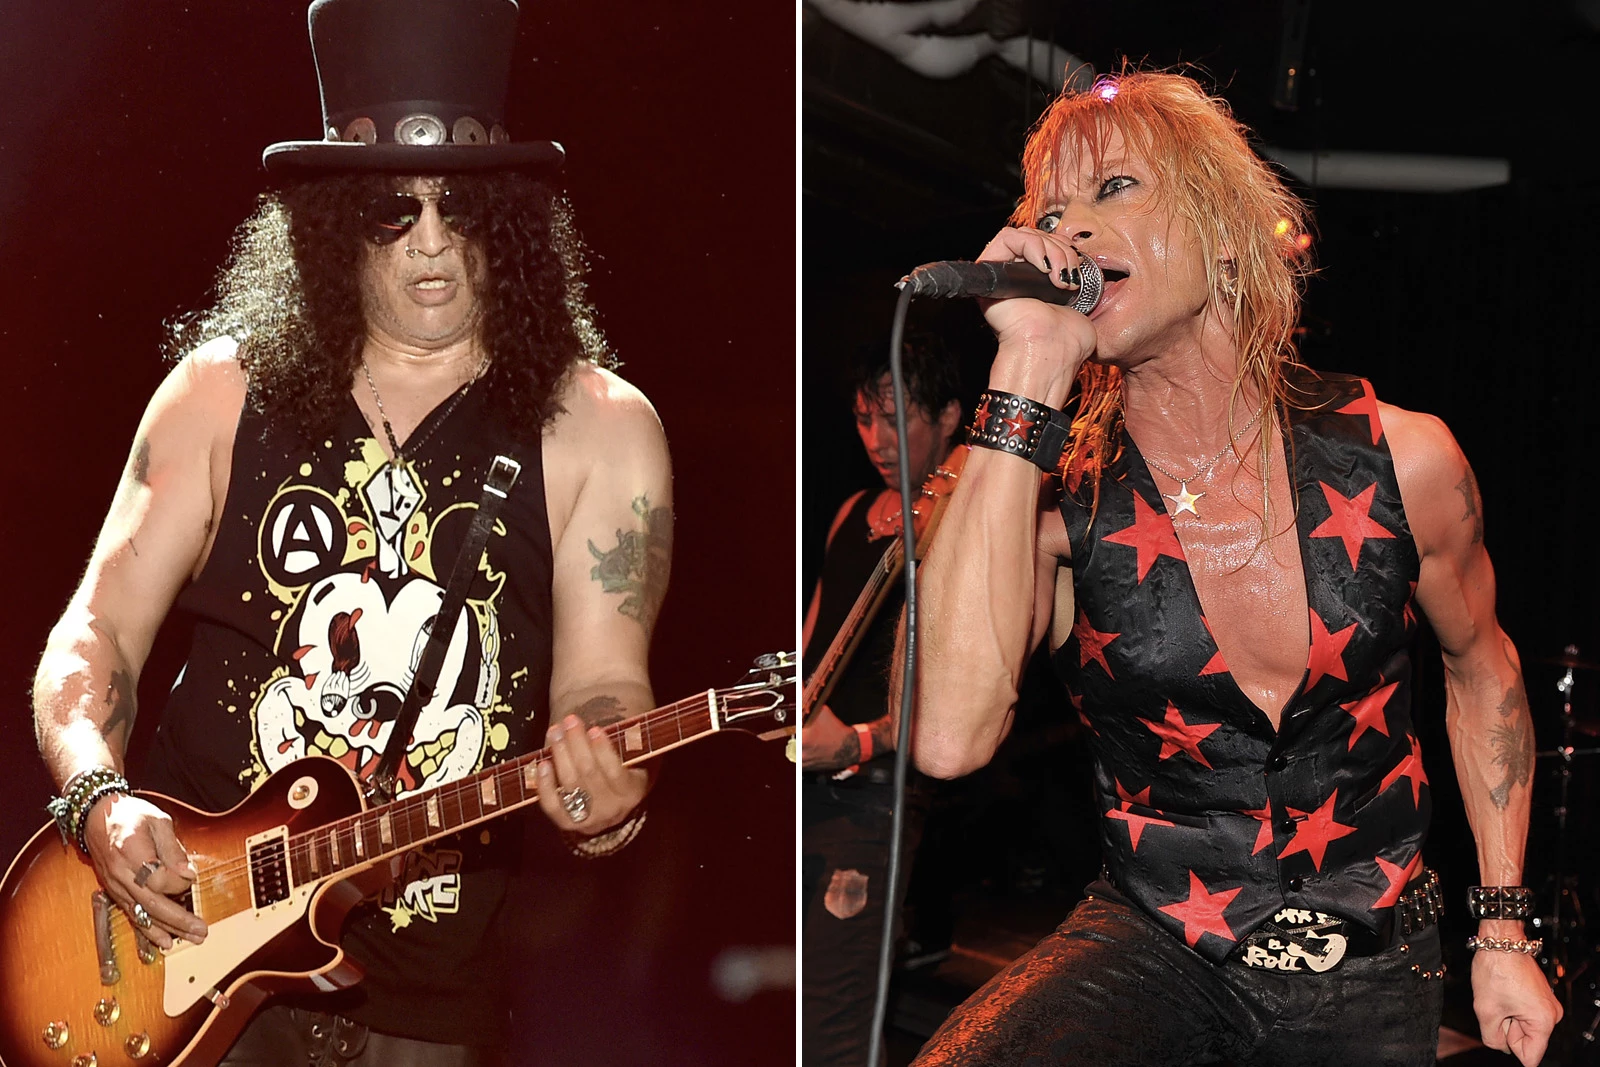 Guns N' Roses Were Toppled by 'Delusions of Grandeur' Says Slash